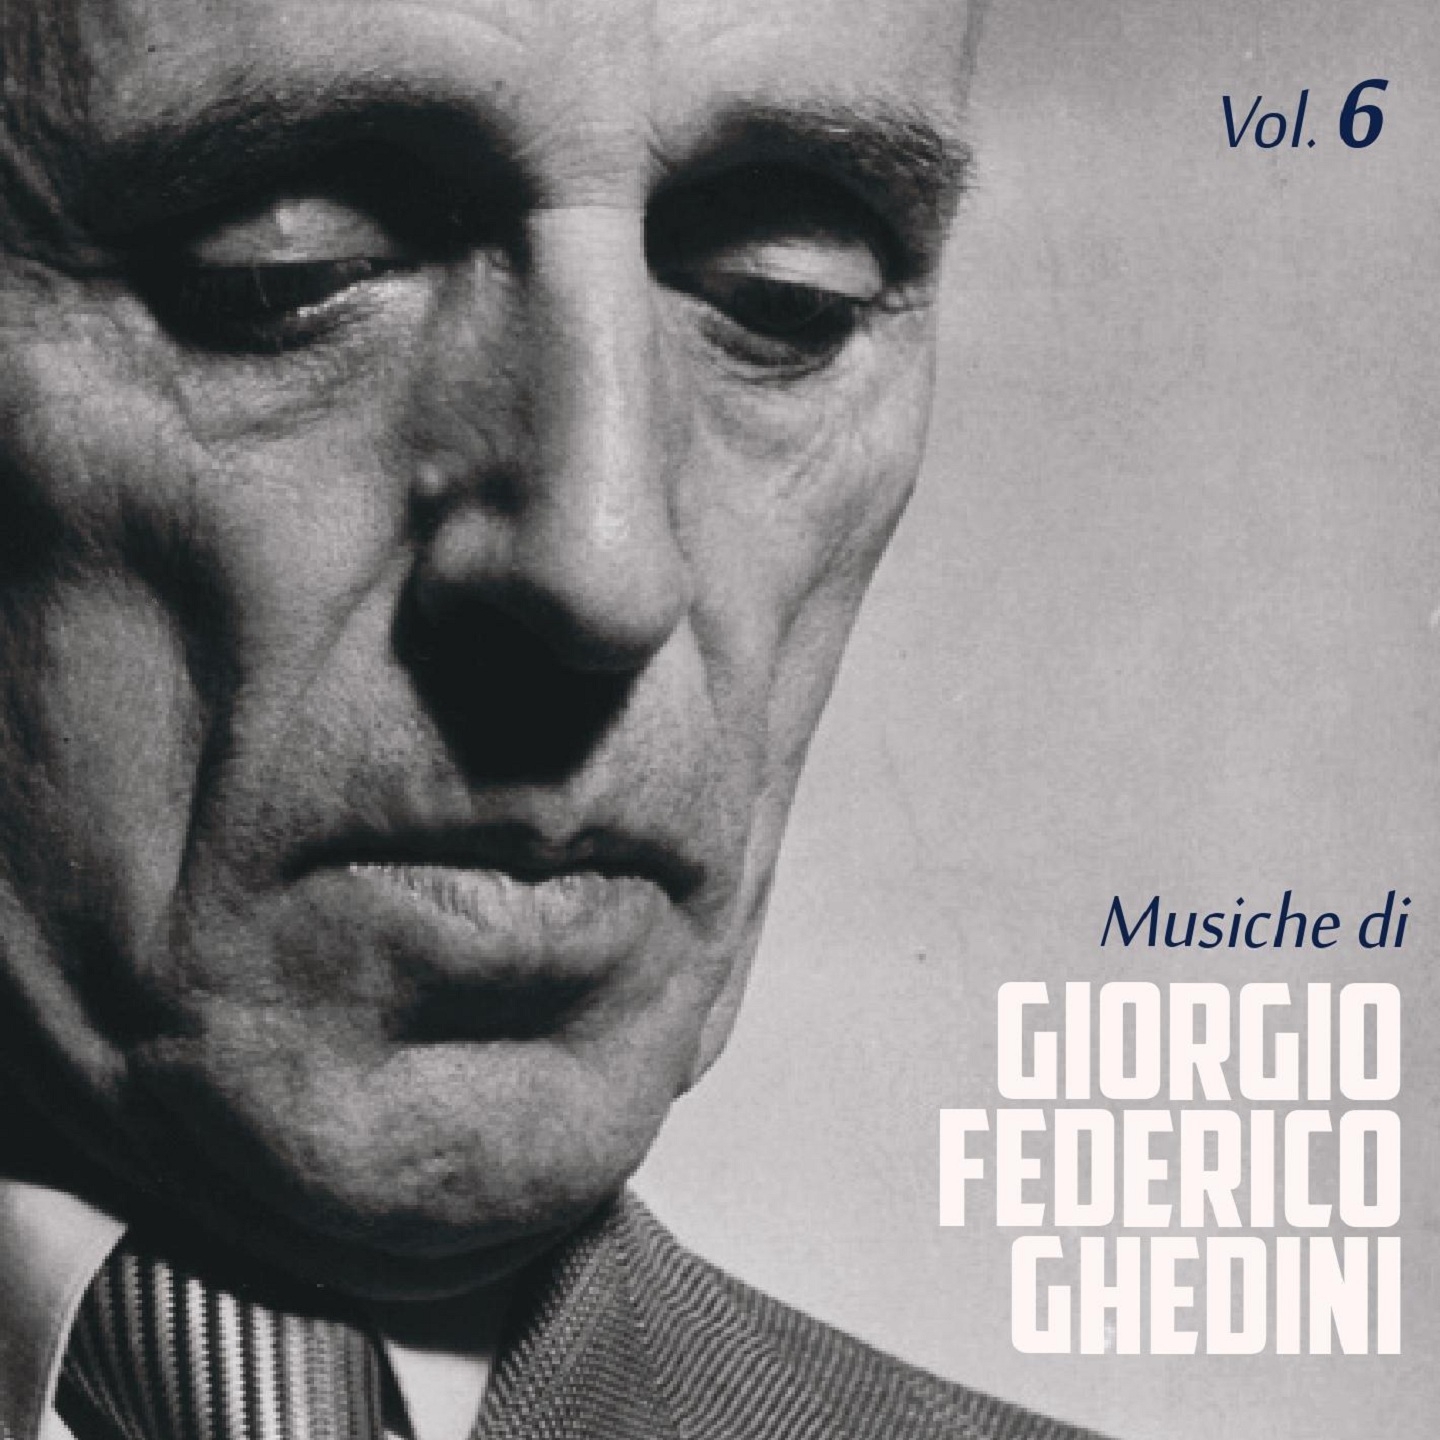 Musiche di Giorgio Federico Ghedini, Vol. 6